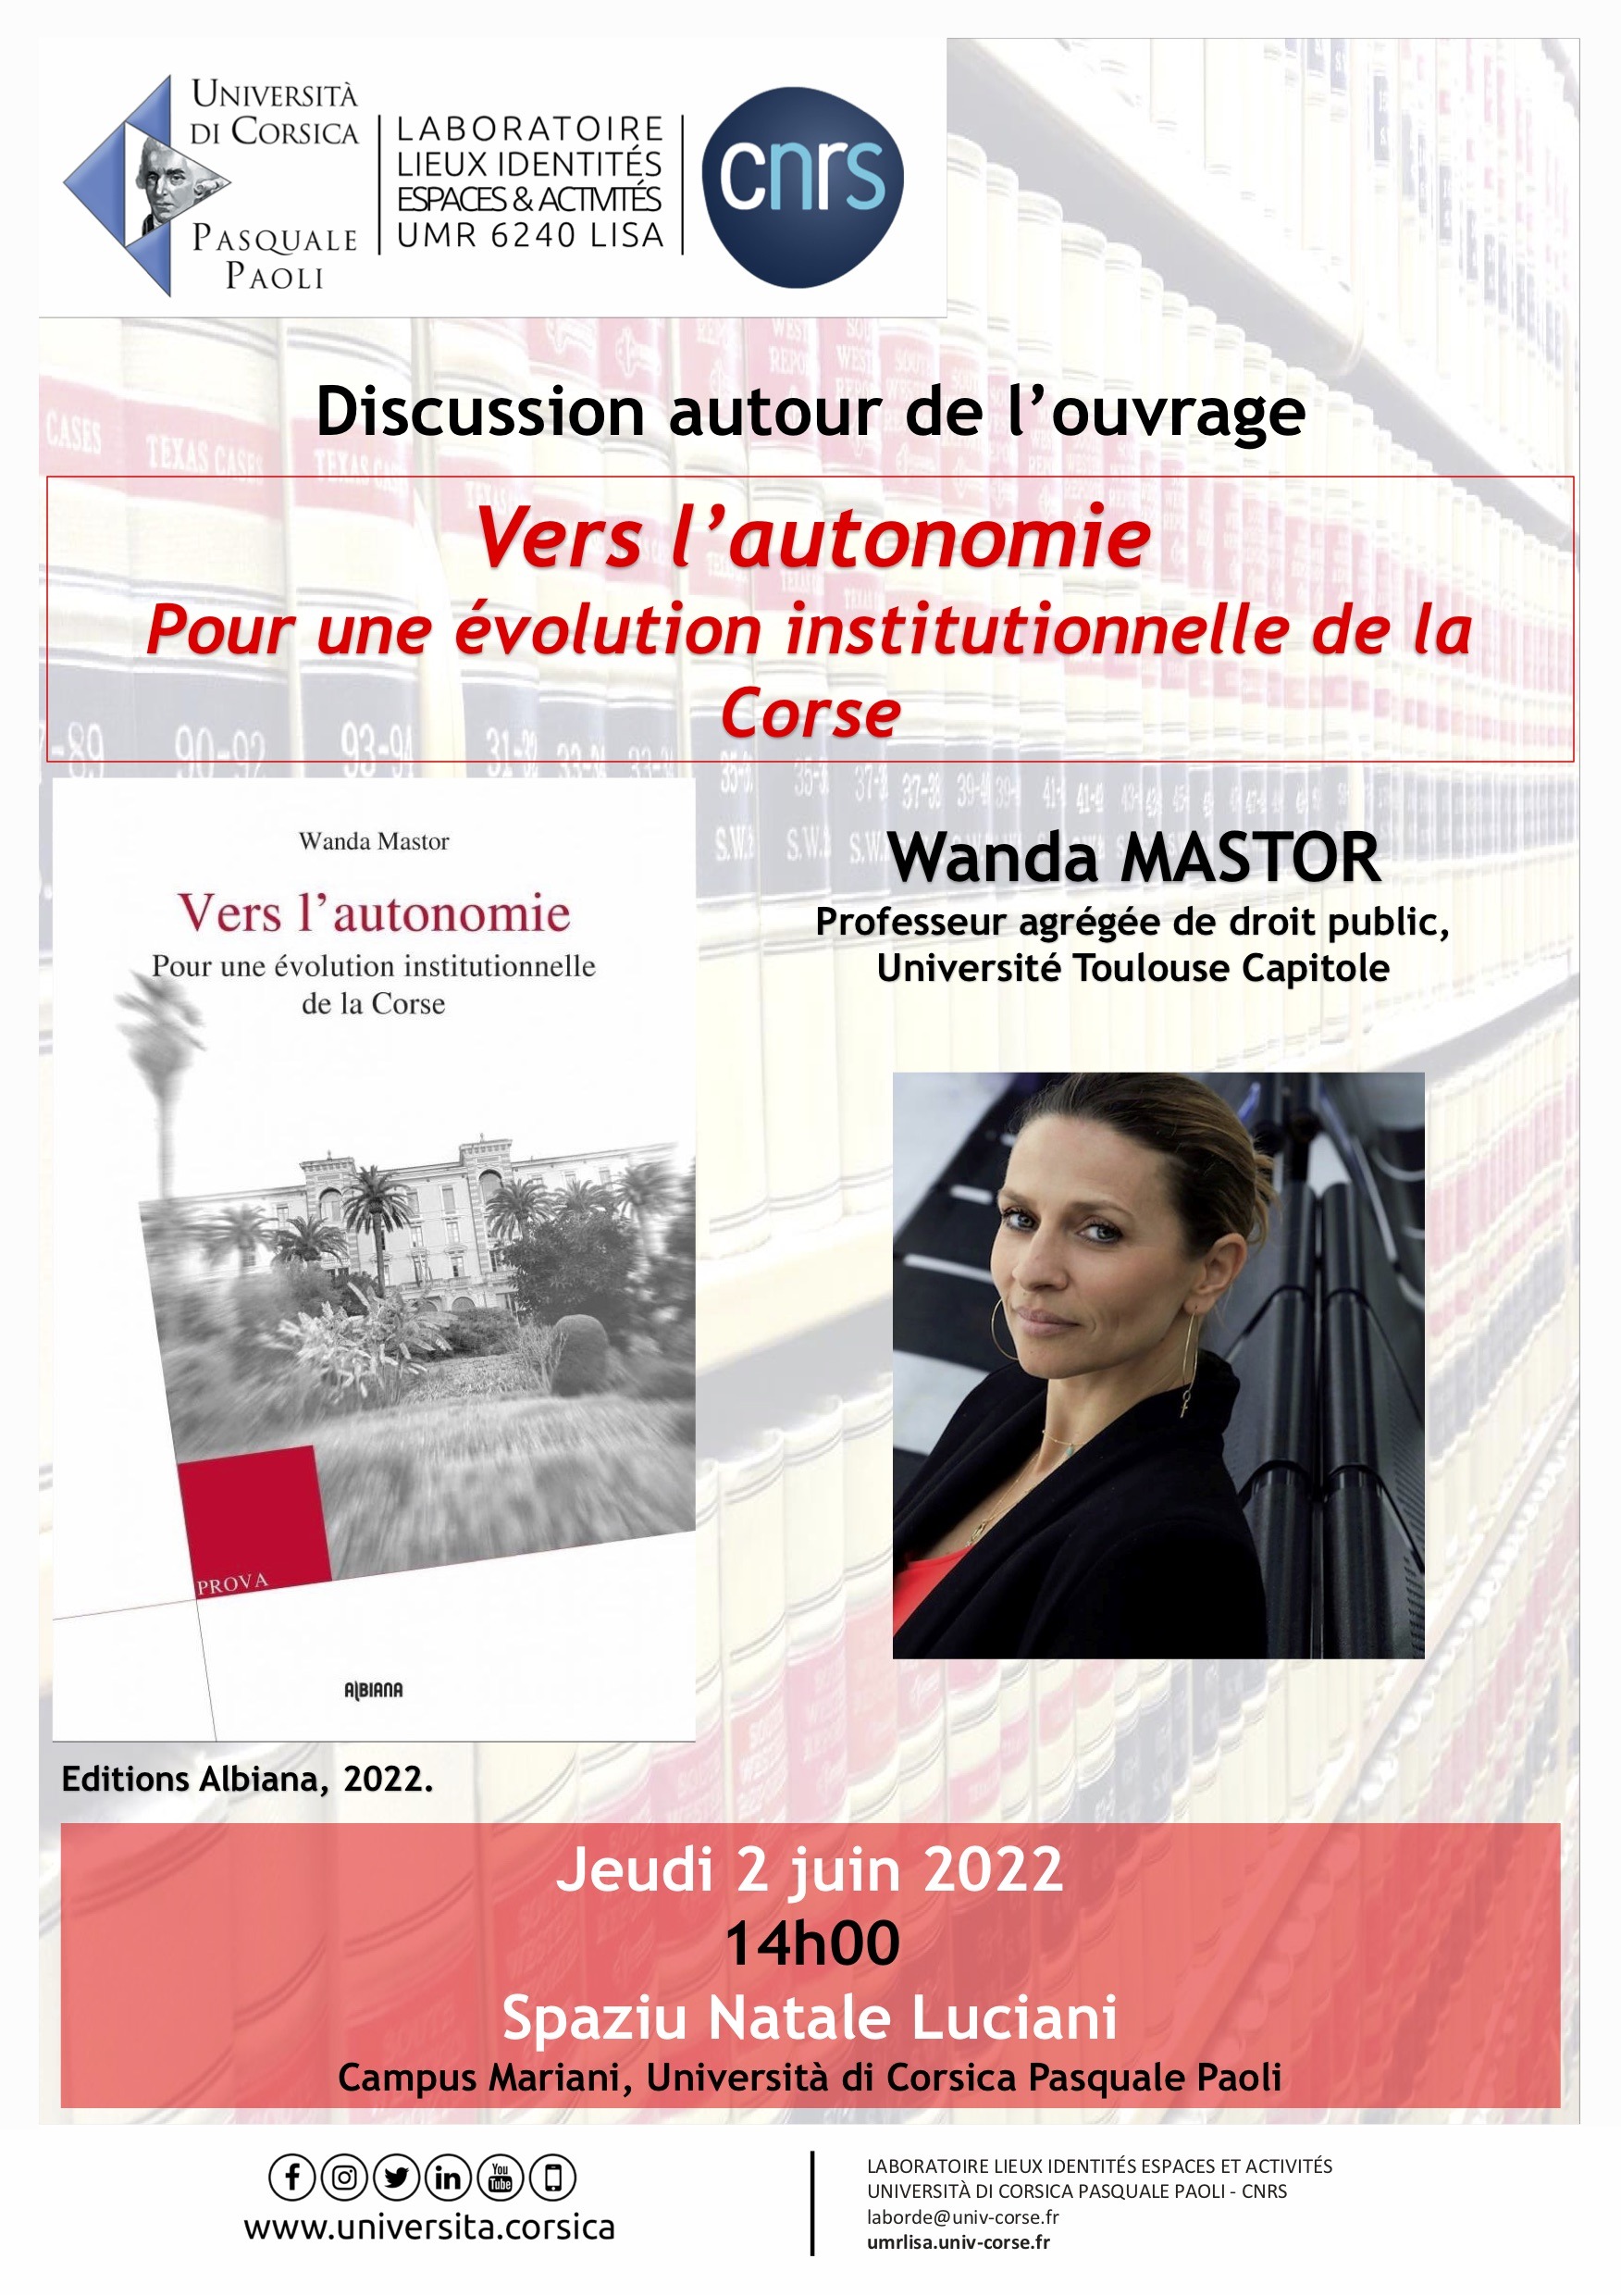 Conférence & Signature de Wanda Mastor le jeudi 2 juin à Corte